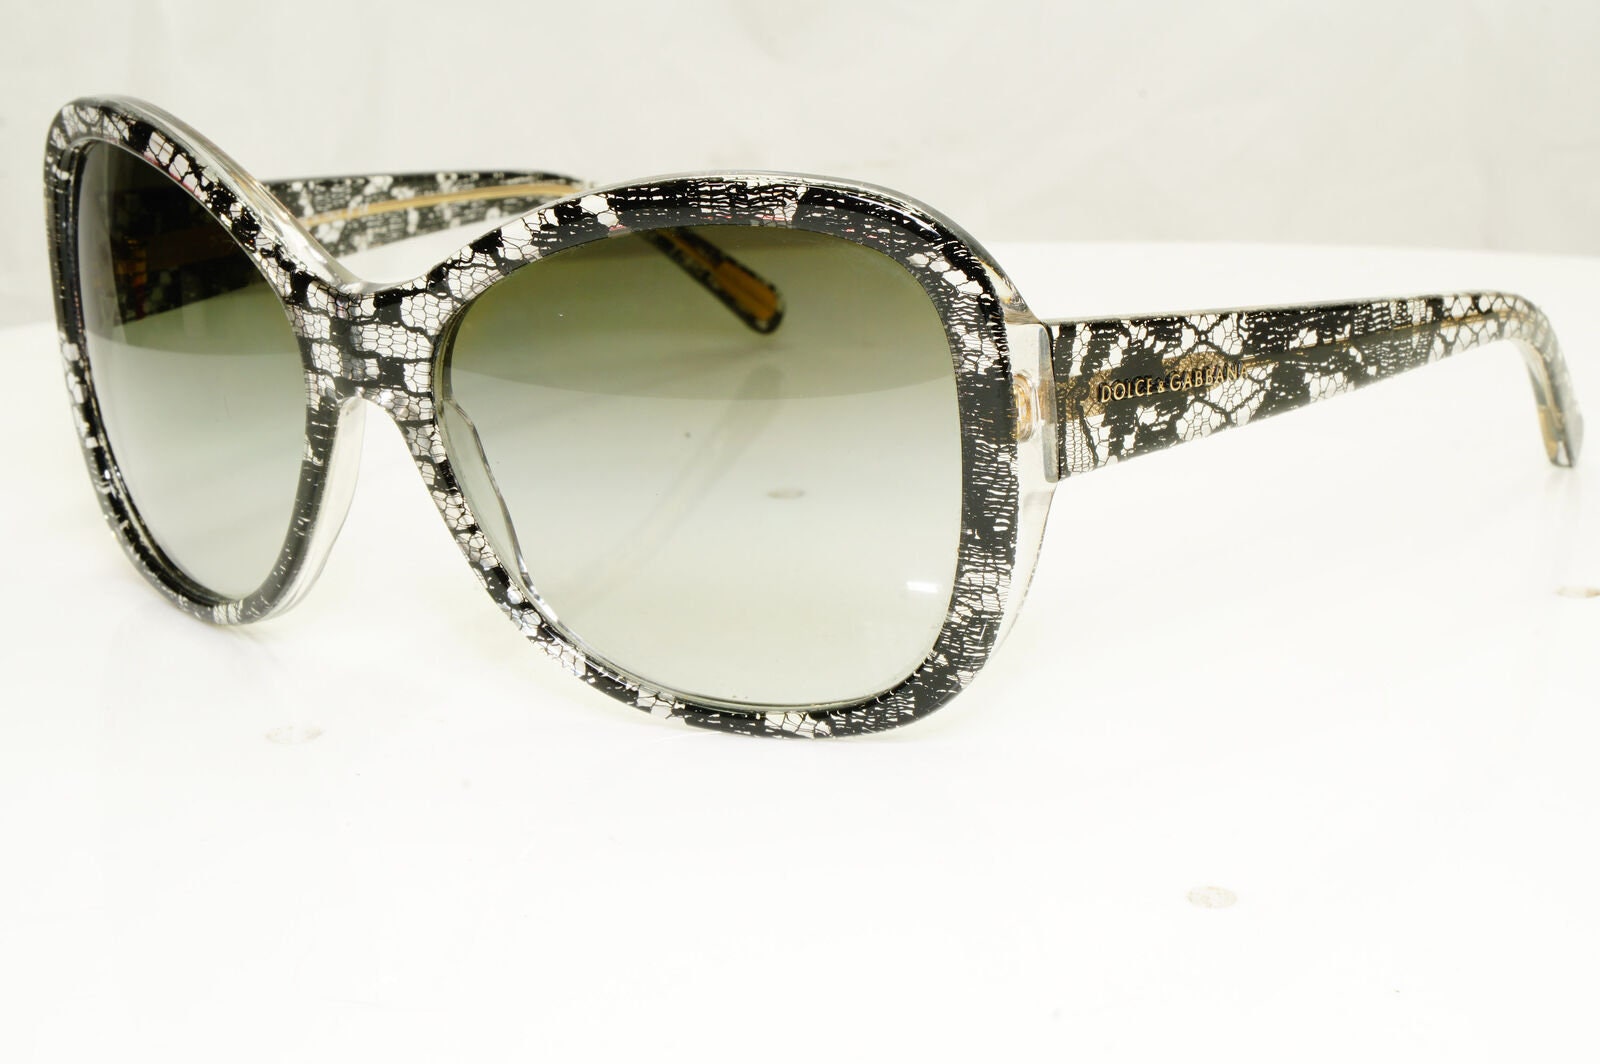 Authentic Dolce Gabbana Womens Vintage Sunglasses Dg 4132 Lace 